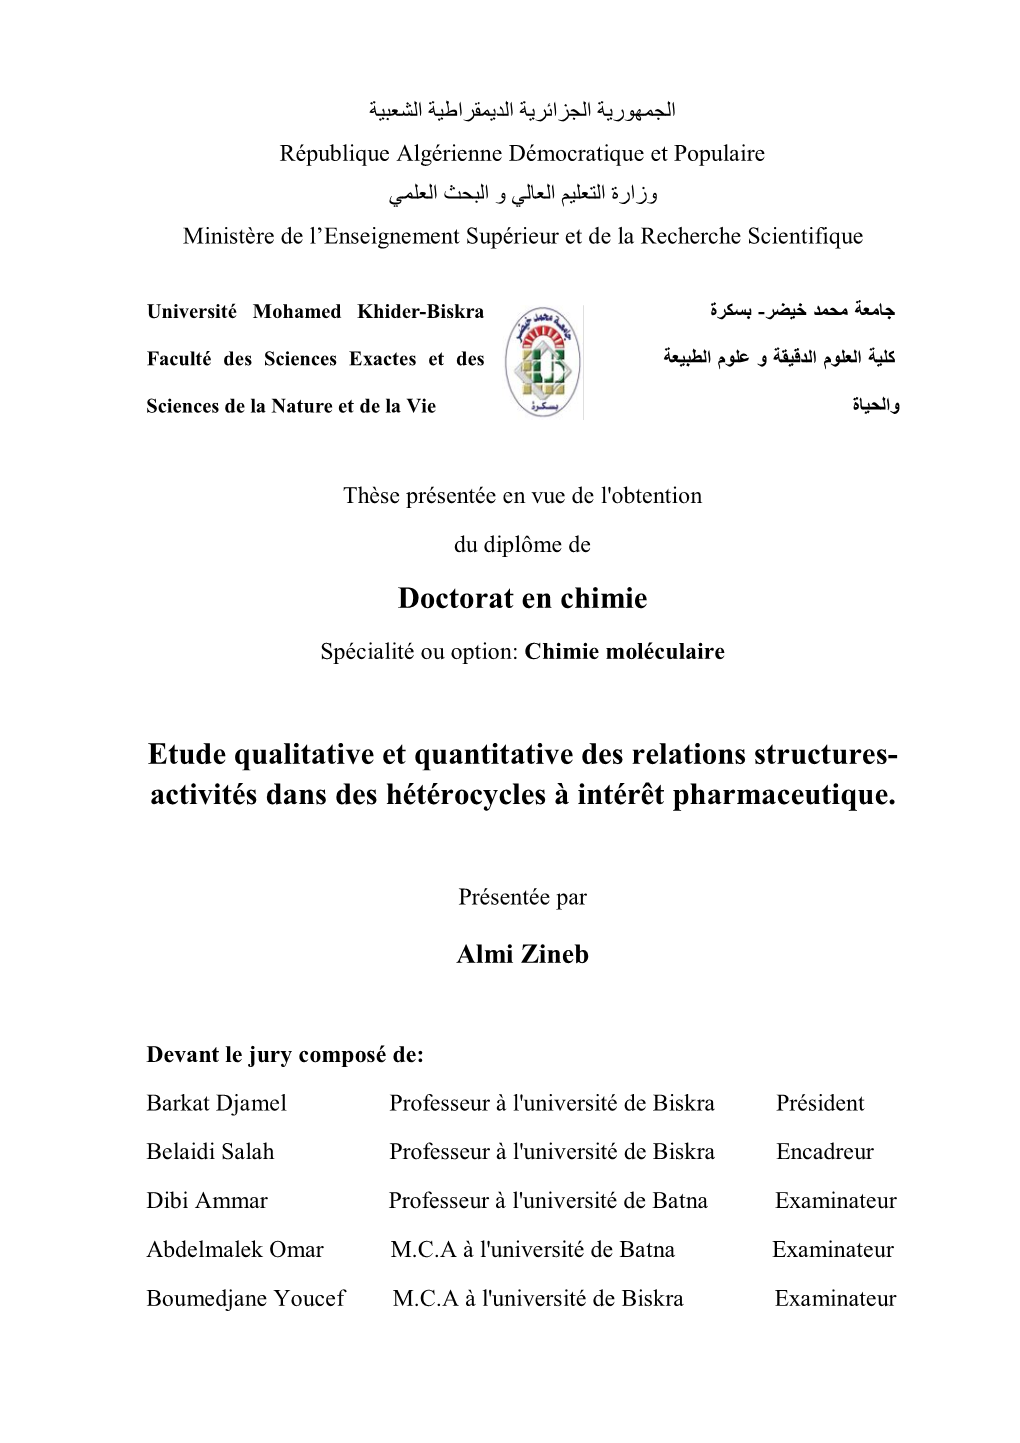 Doctorat En Chimie Etude Qualitative Et Quantitative Des Relations Structures